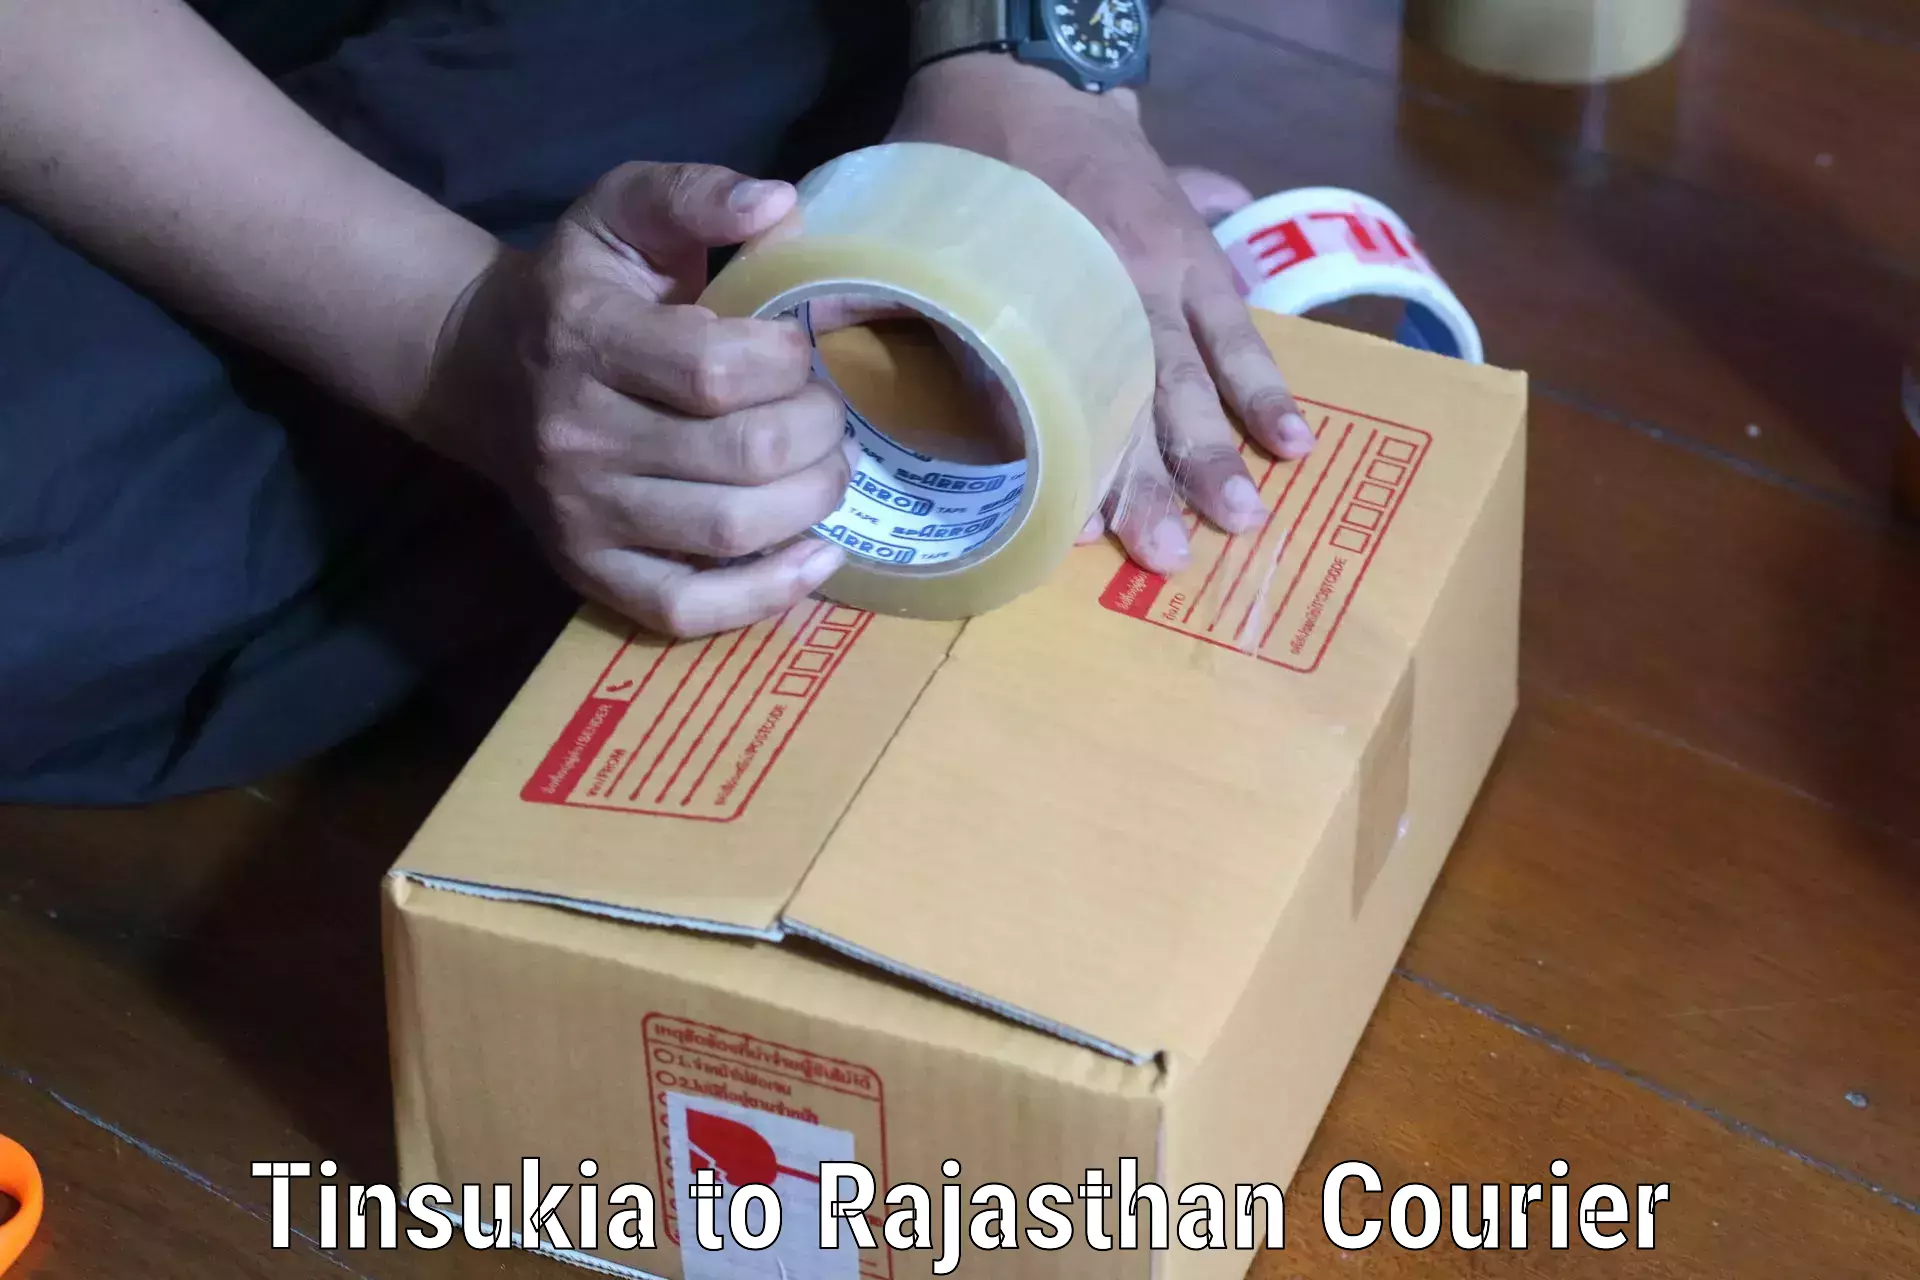 24/7 courier service Tinsukia to Sardarshahr